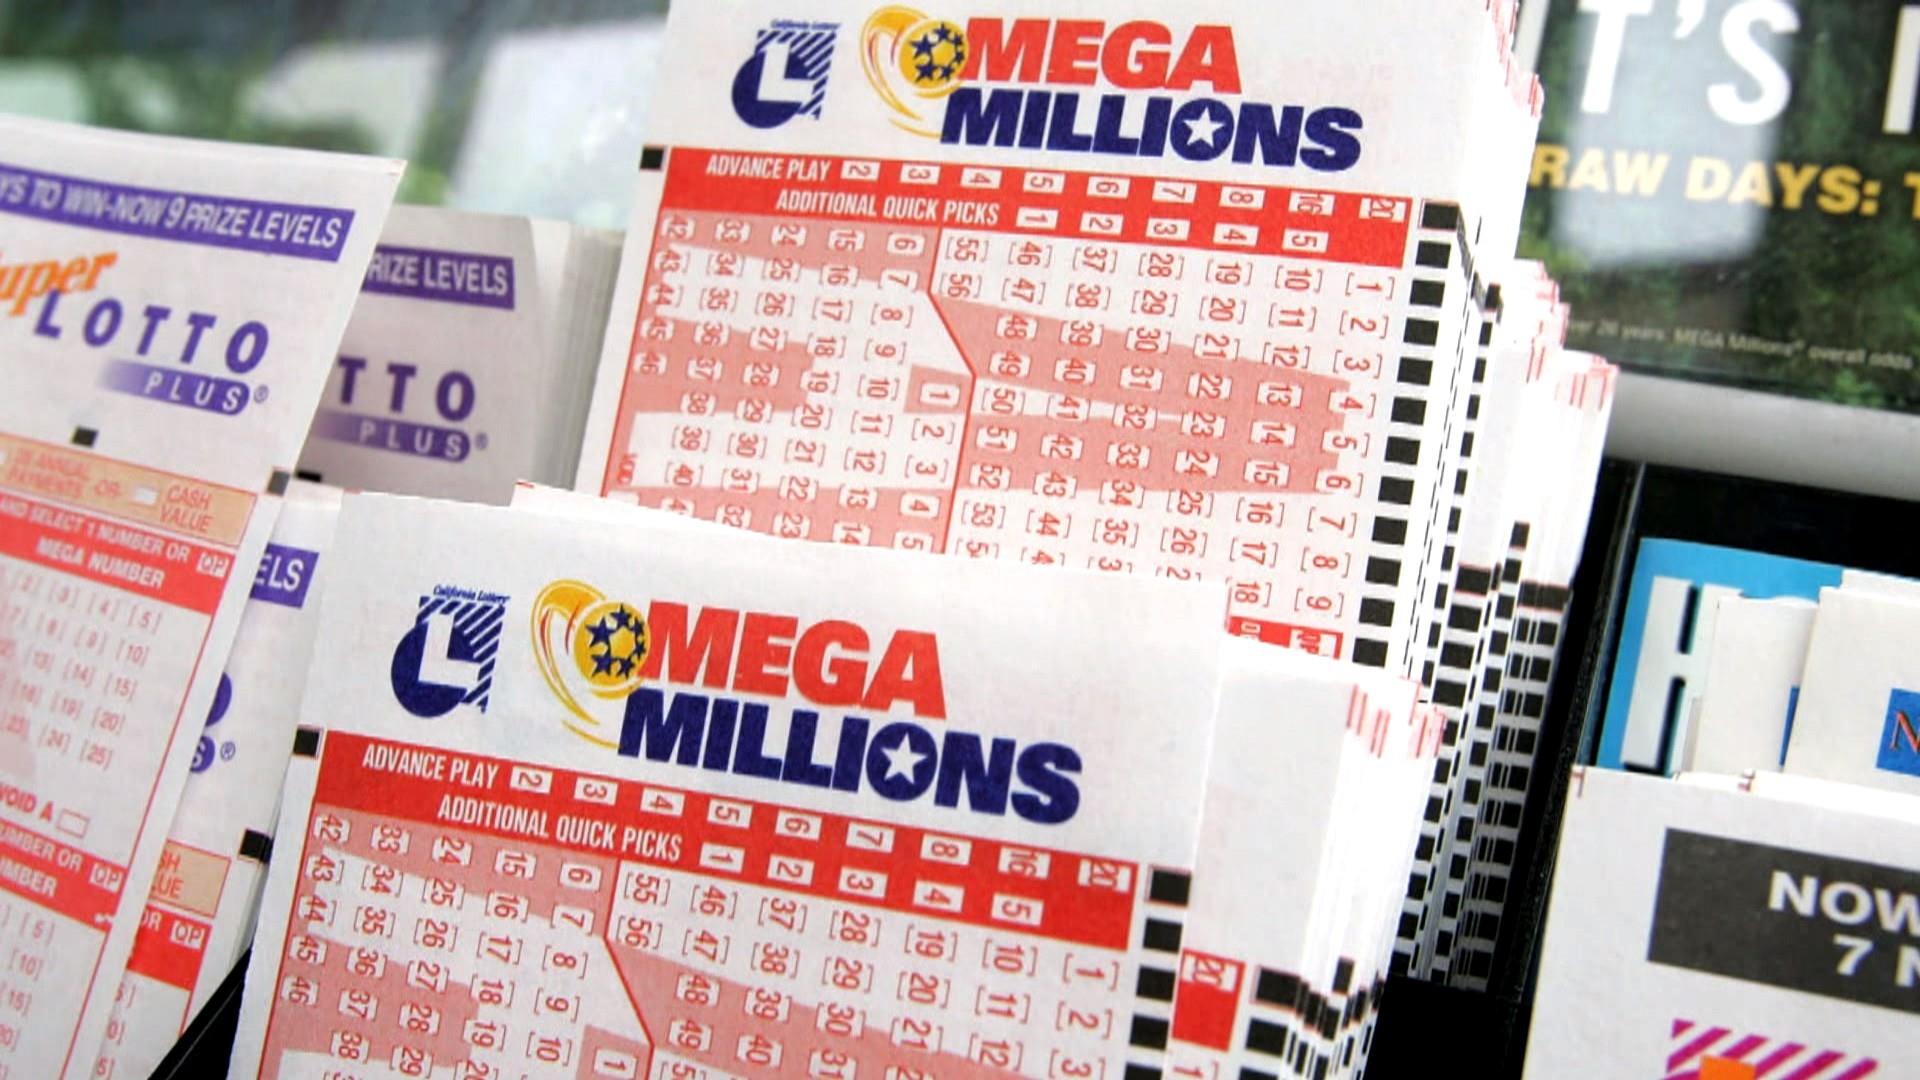 Mega Millions jackpot grows to $306 million; Powerball jackpot is $337 million